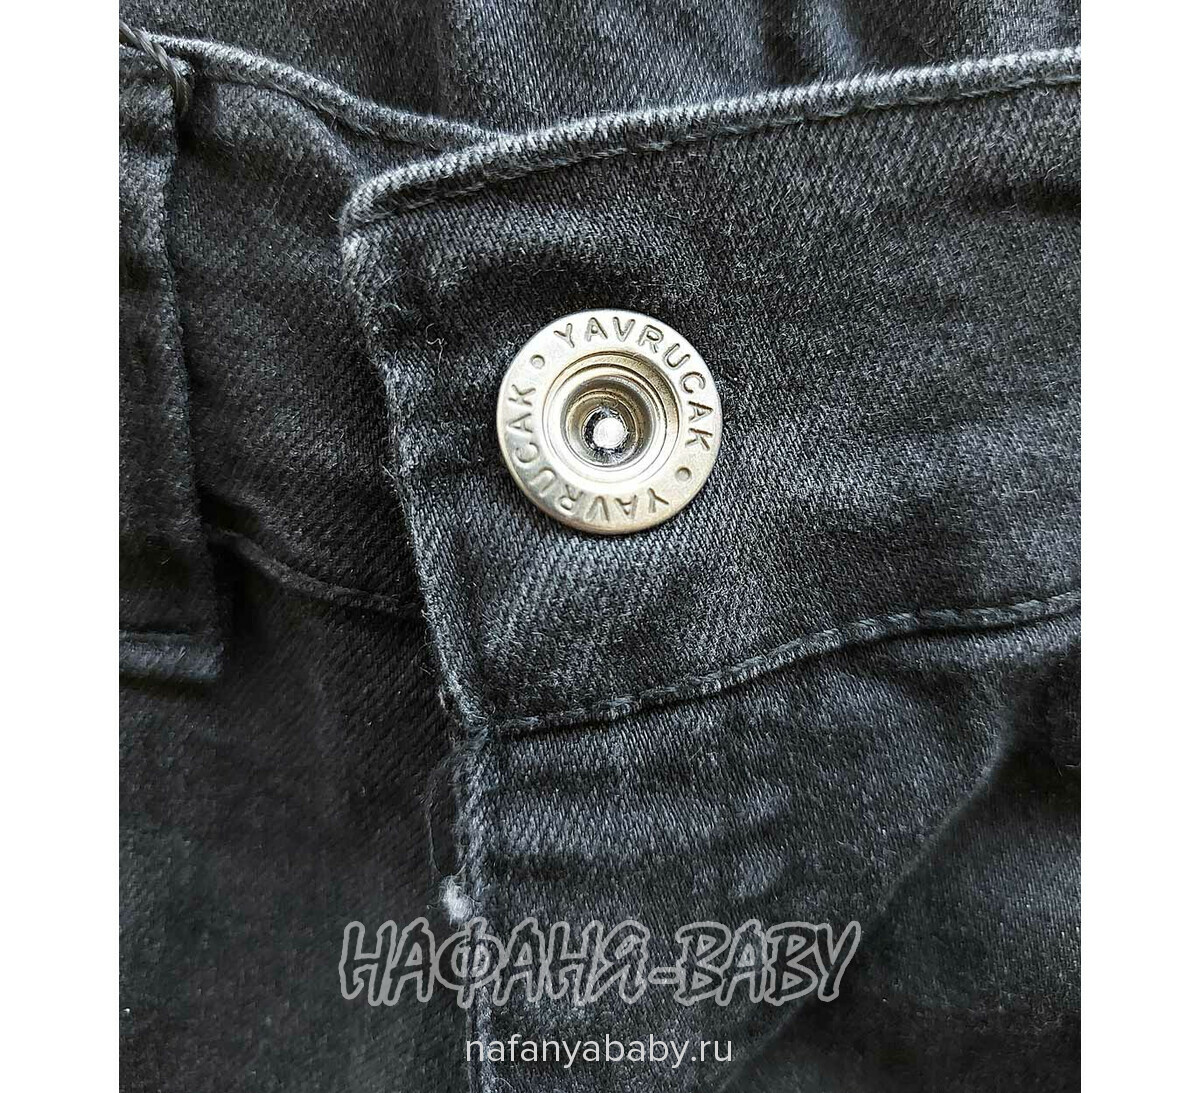 Подростковые джинсы YAVRUCAK арт: 5202 для мальчика 8-12 лет, цвет черный, оптом Турция